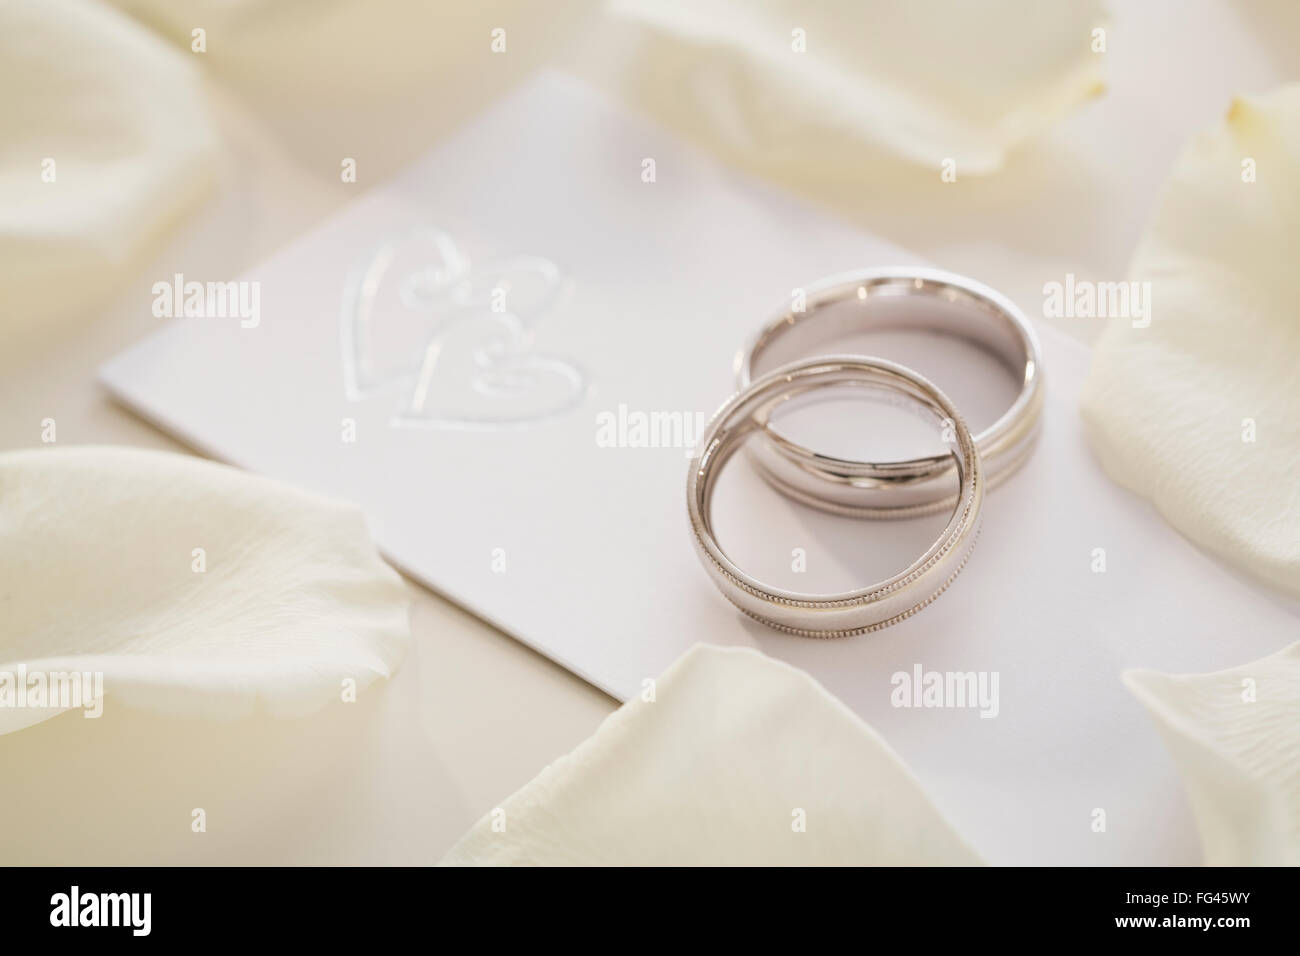 Mariage sur invitation de mariage Banque D'Images